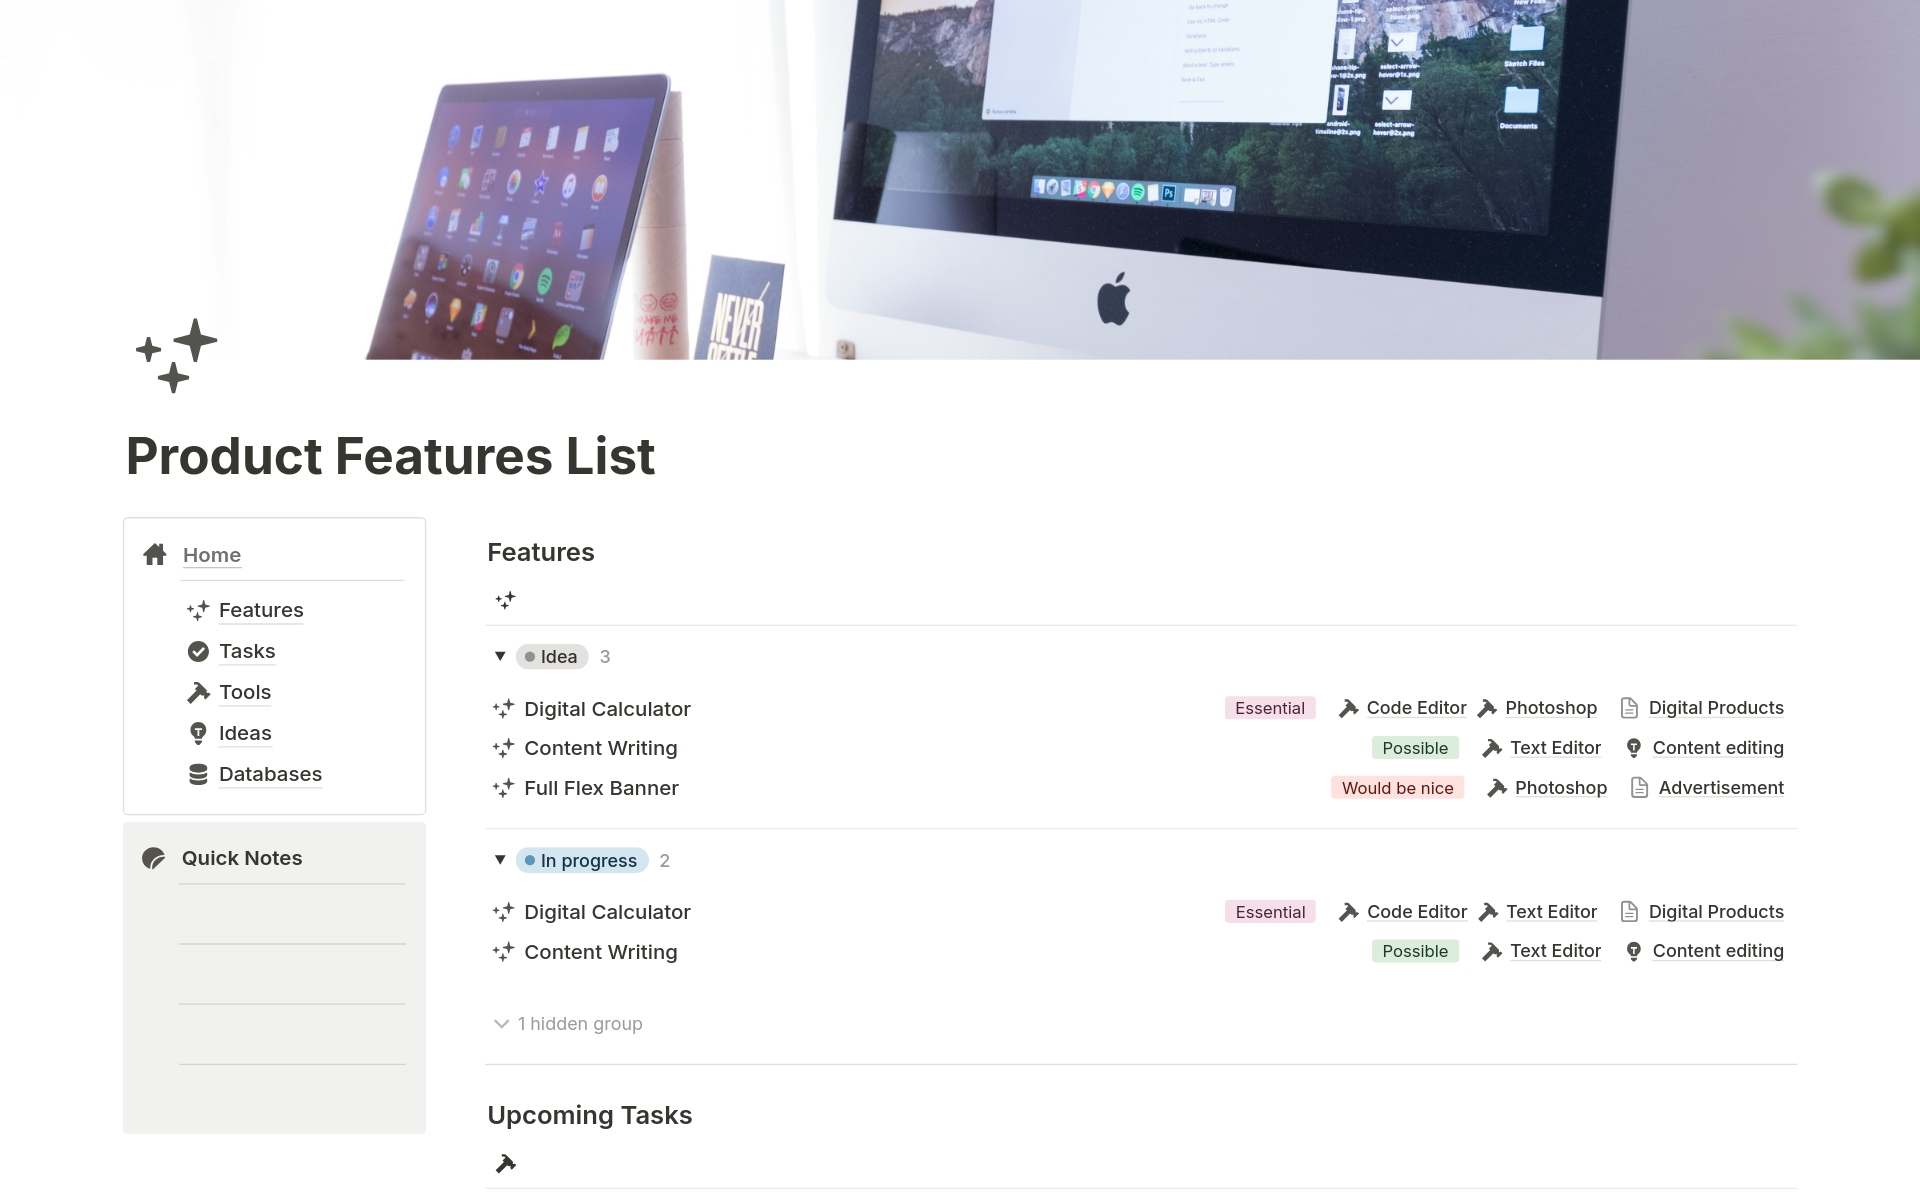 Vista previa de una plantilla para Product Feature List 